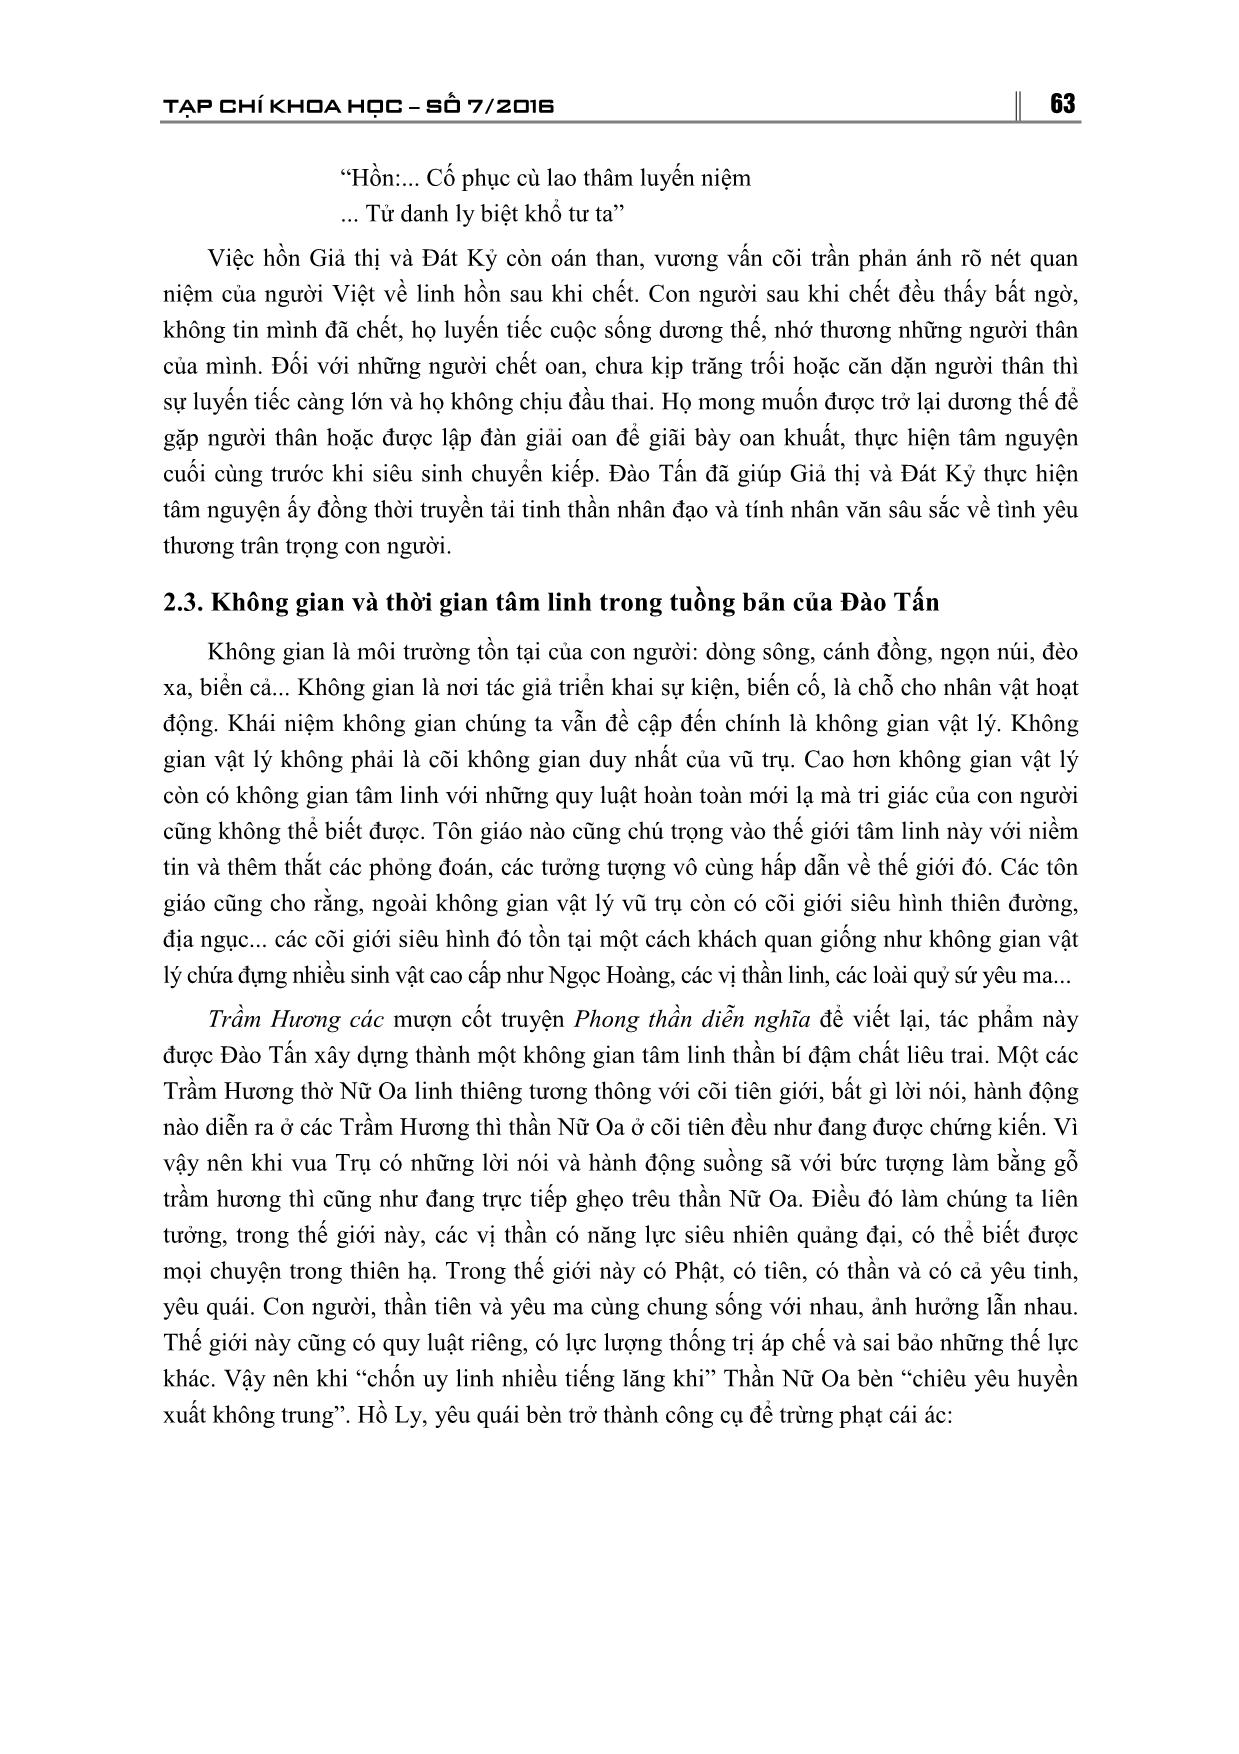 Yếu tố tâm linh trong tuồng bản Đào Tấn trang 9